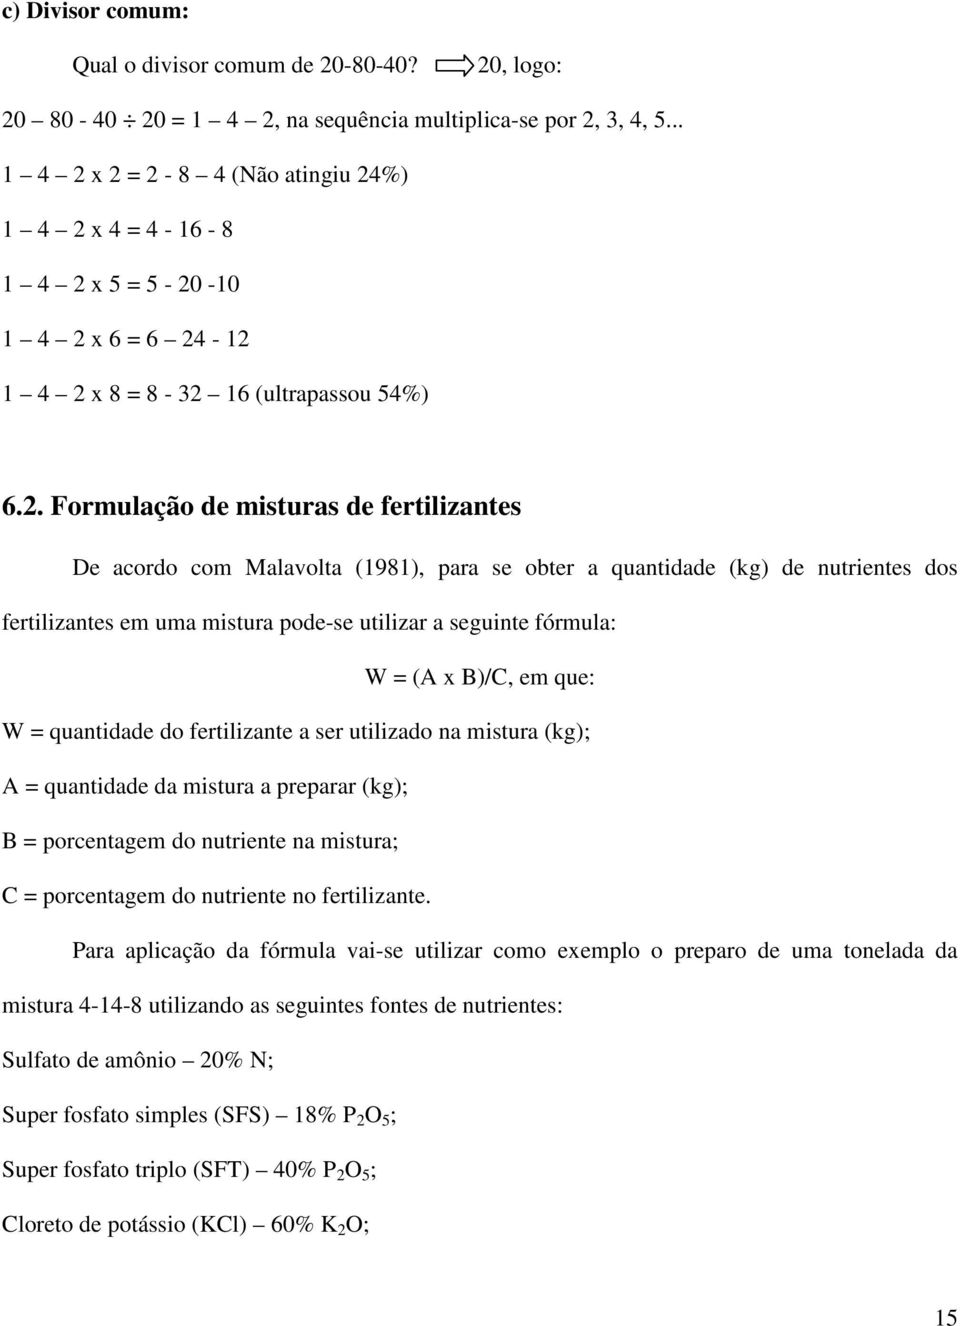 x 2 = 2-8 4 (Não atingiu 24%) 1 4 2 x 4 = 4-16 - 8 1 4 2 x 5 = 5-20 -10 1 4 2 x 6 = 6 24-12 1 4 2 x 8 = 8-32 16 (ultrapassou 54%) 6.2. Formulação de misturas de fertilizantes De acordo com Malavolta